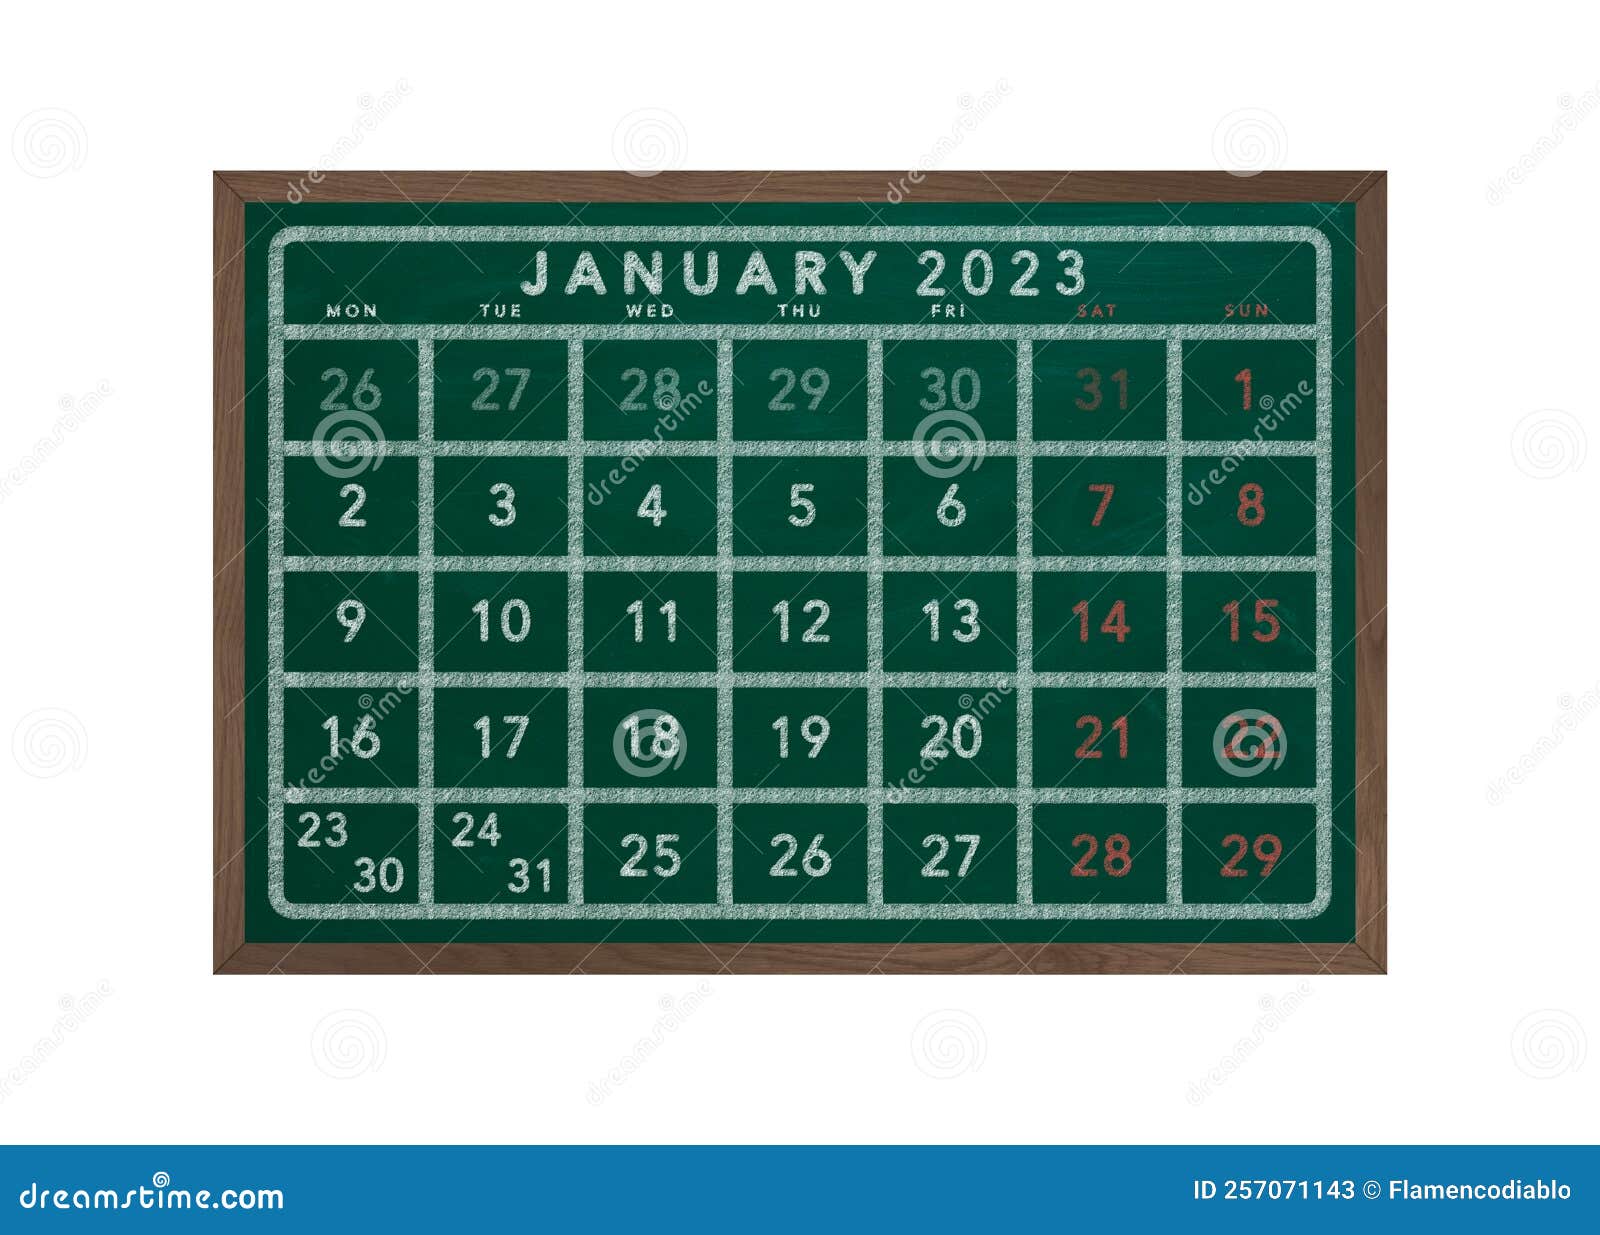 Đầu năm mới luôn là khoảng thời gian đặc biệt và thường mang ý nghĩa đặc biệt đối với mỗi người. Lịch năm 2024 với tháng đầu tiên - tháng 1, sẽ mang lại cho bạn những bất ngờ và trải nghiệm mới mẻ. Hãy cùng đón xem hình ảnh liên quan để khám phá ngay!